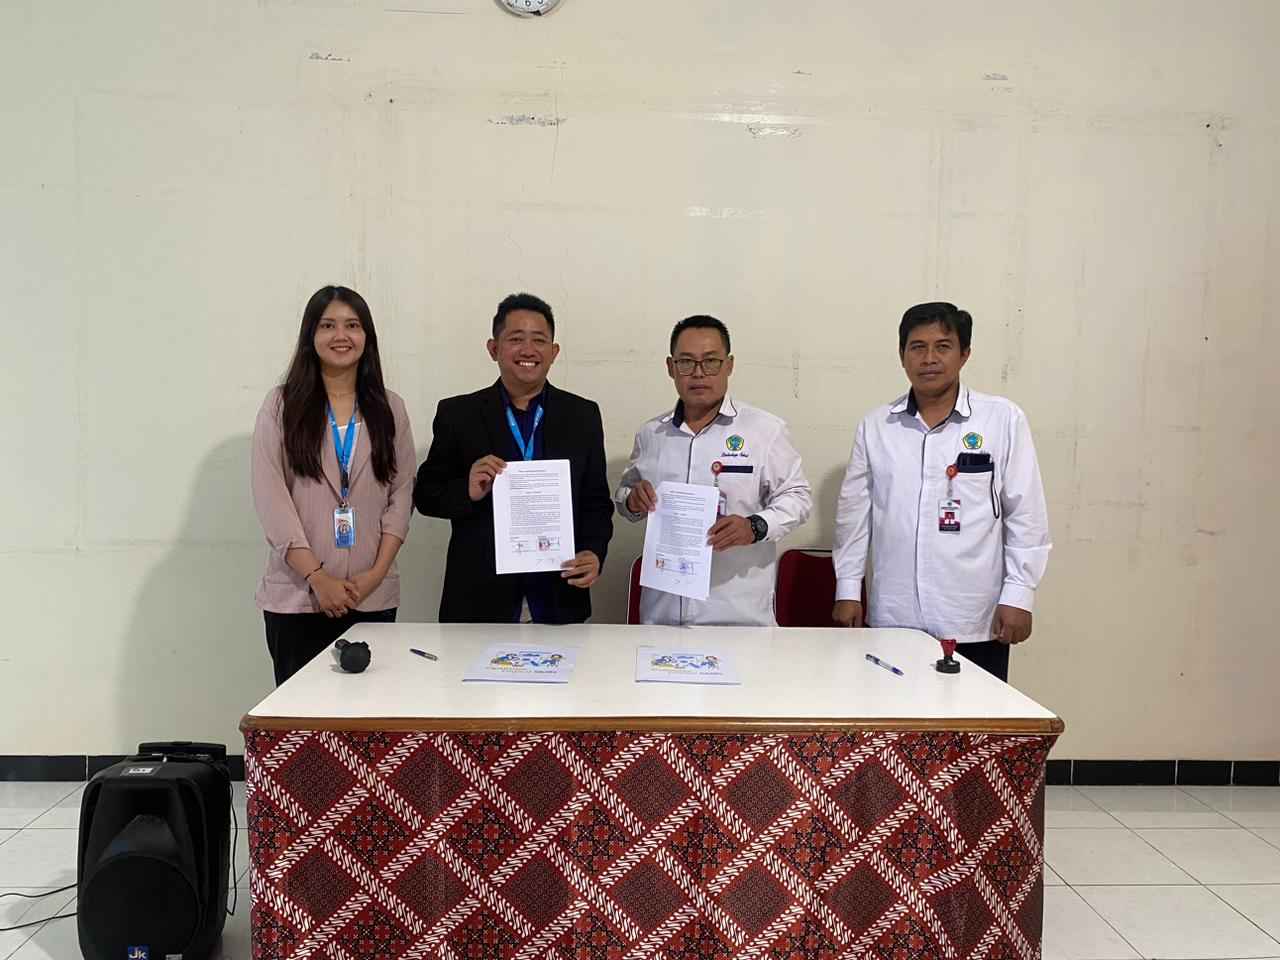 Dok. Tim Gamelab - Gamelab Indonesia dan Universitas Ngudi Waluyo Telah Menandatangani Surat Kerjasama